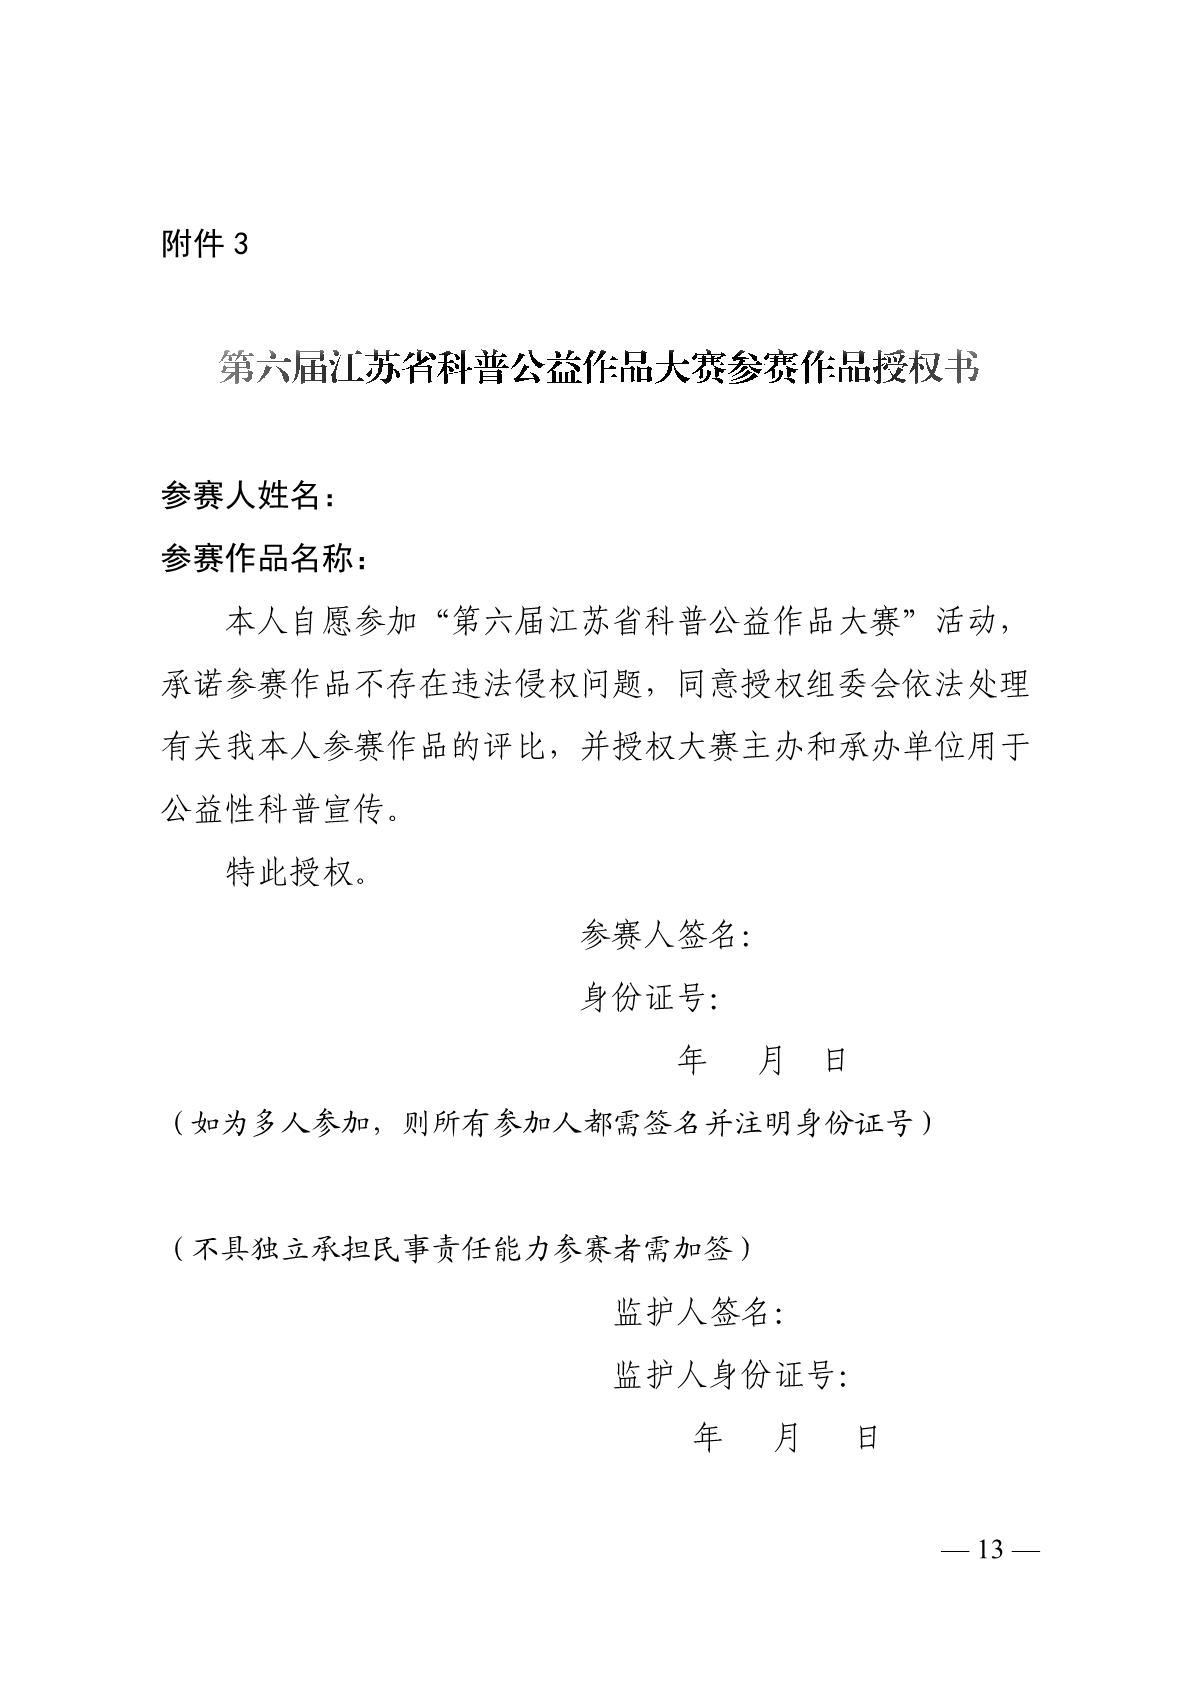 关于组织开展第六届江苏省科普公益作品大赛的通知（苏科协发〔2020〕46号）(1)_13.JPG